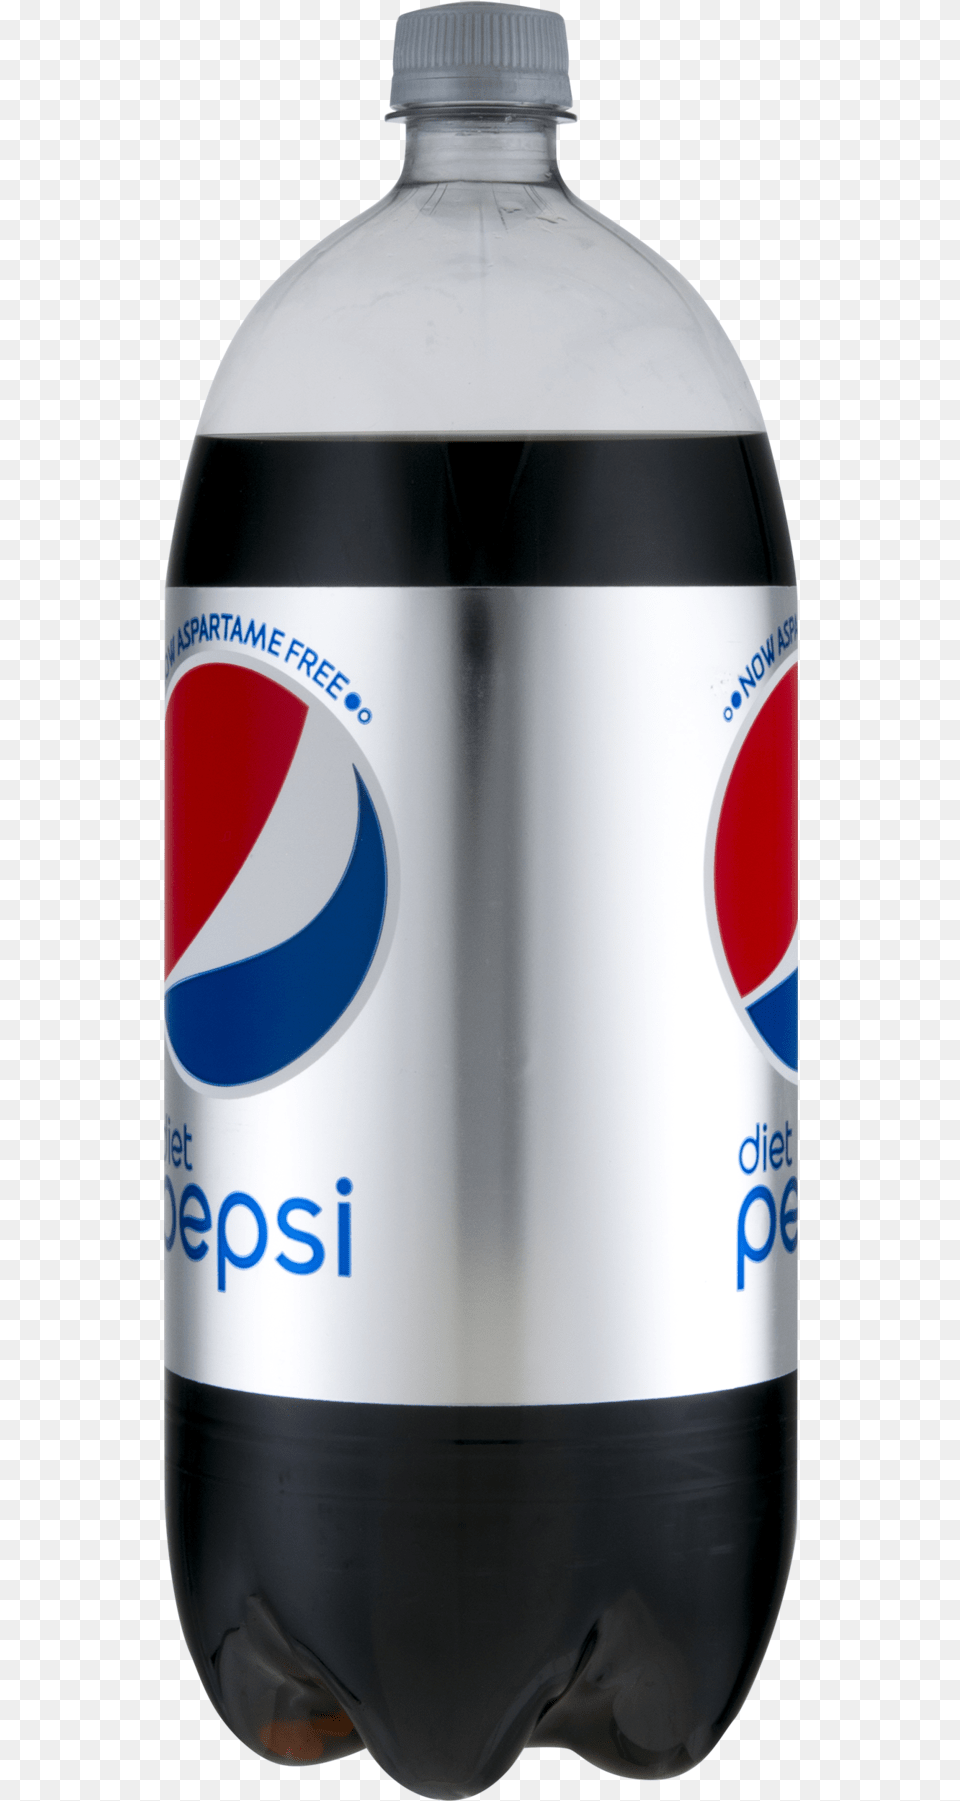 Diet Pepsi 2 Liter, Bottle, Beverage, Pop Bottle, Soda Png